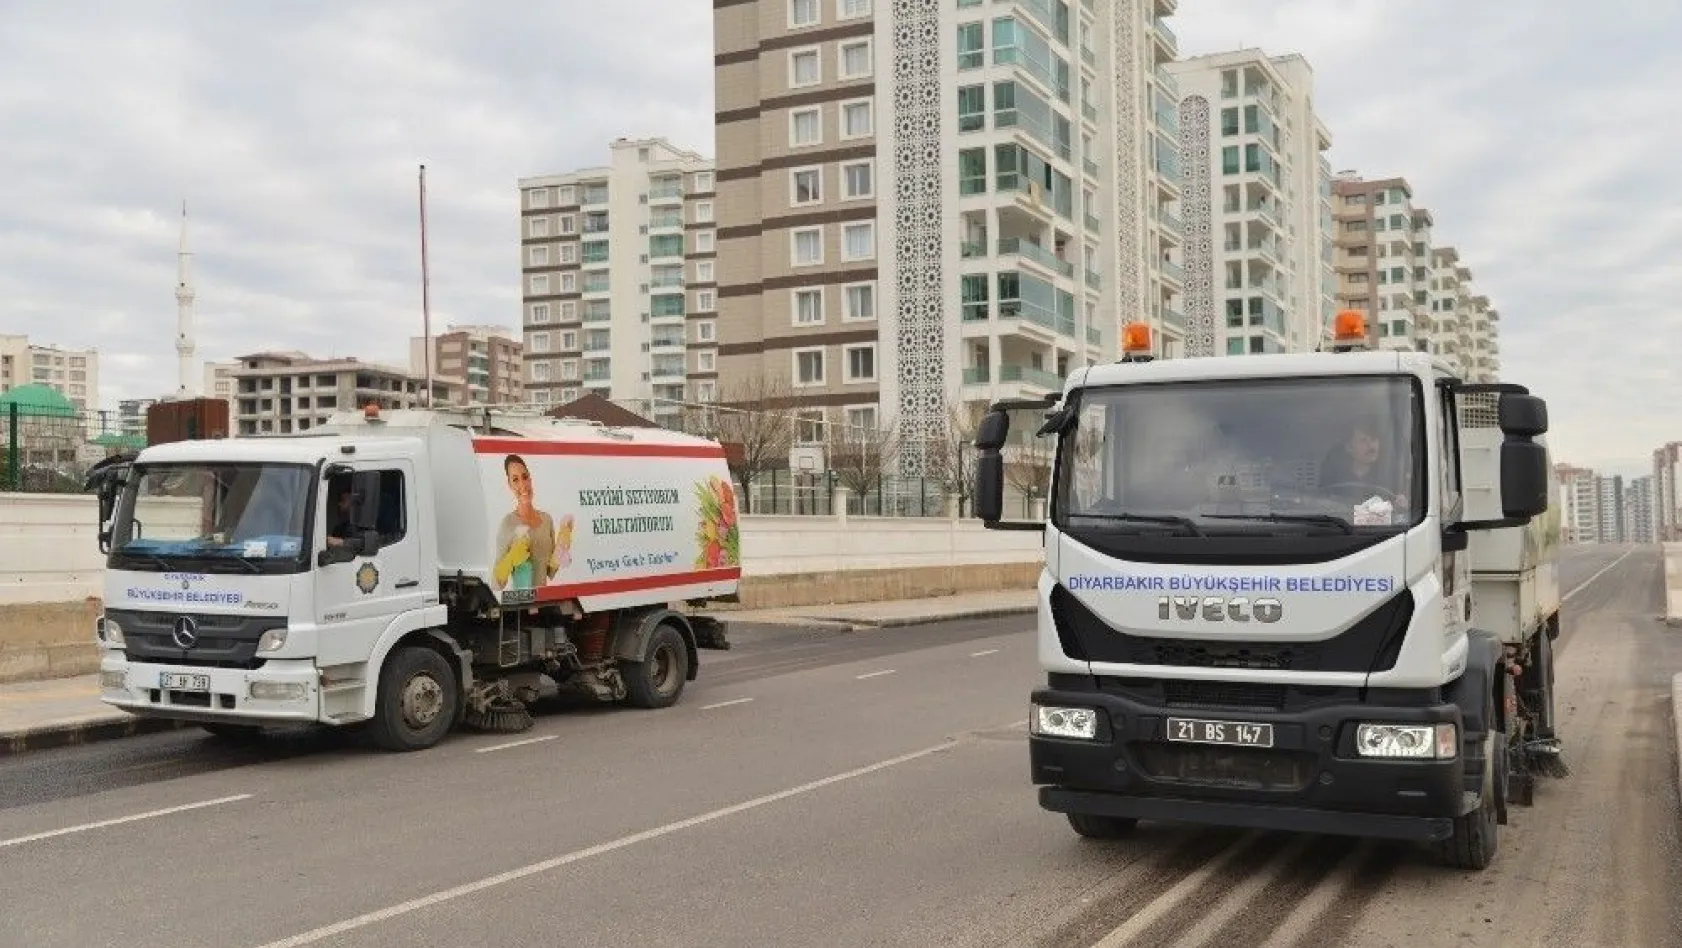 Büyükşehir Belediyesi Kayapınar'da temizlik çalışması başlattı
